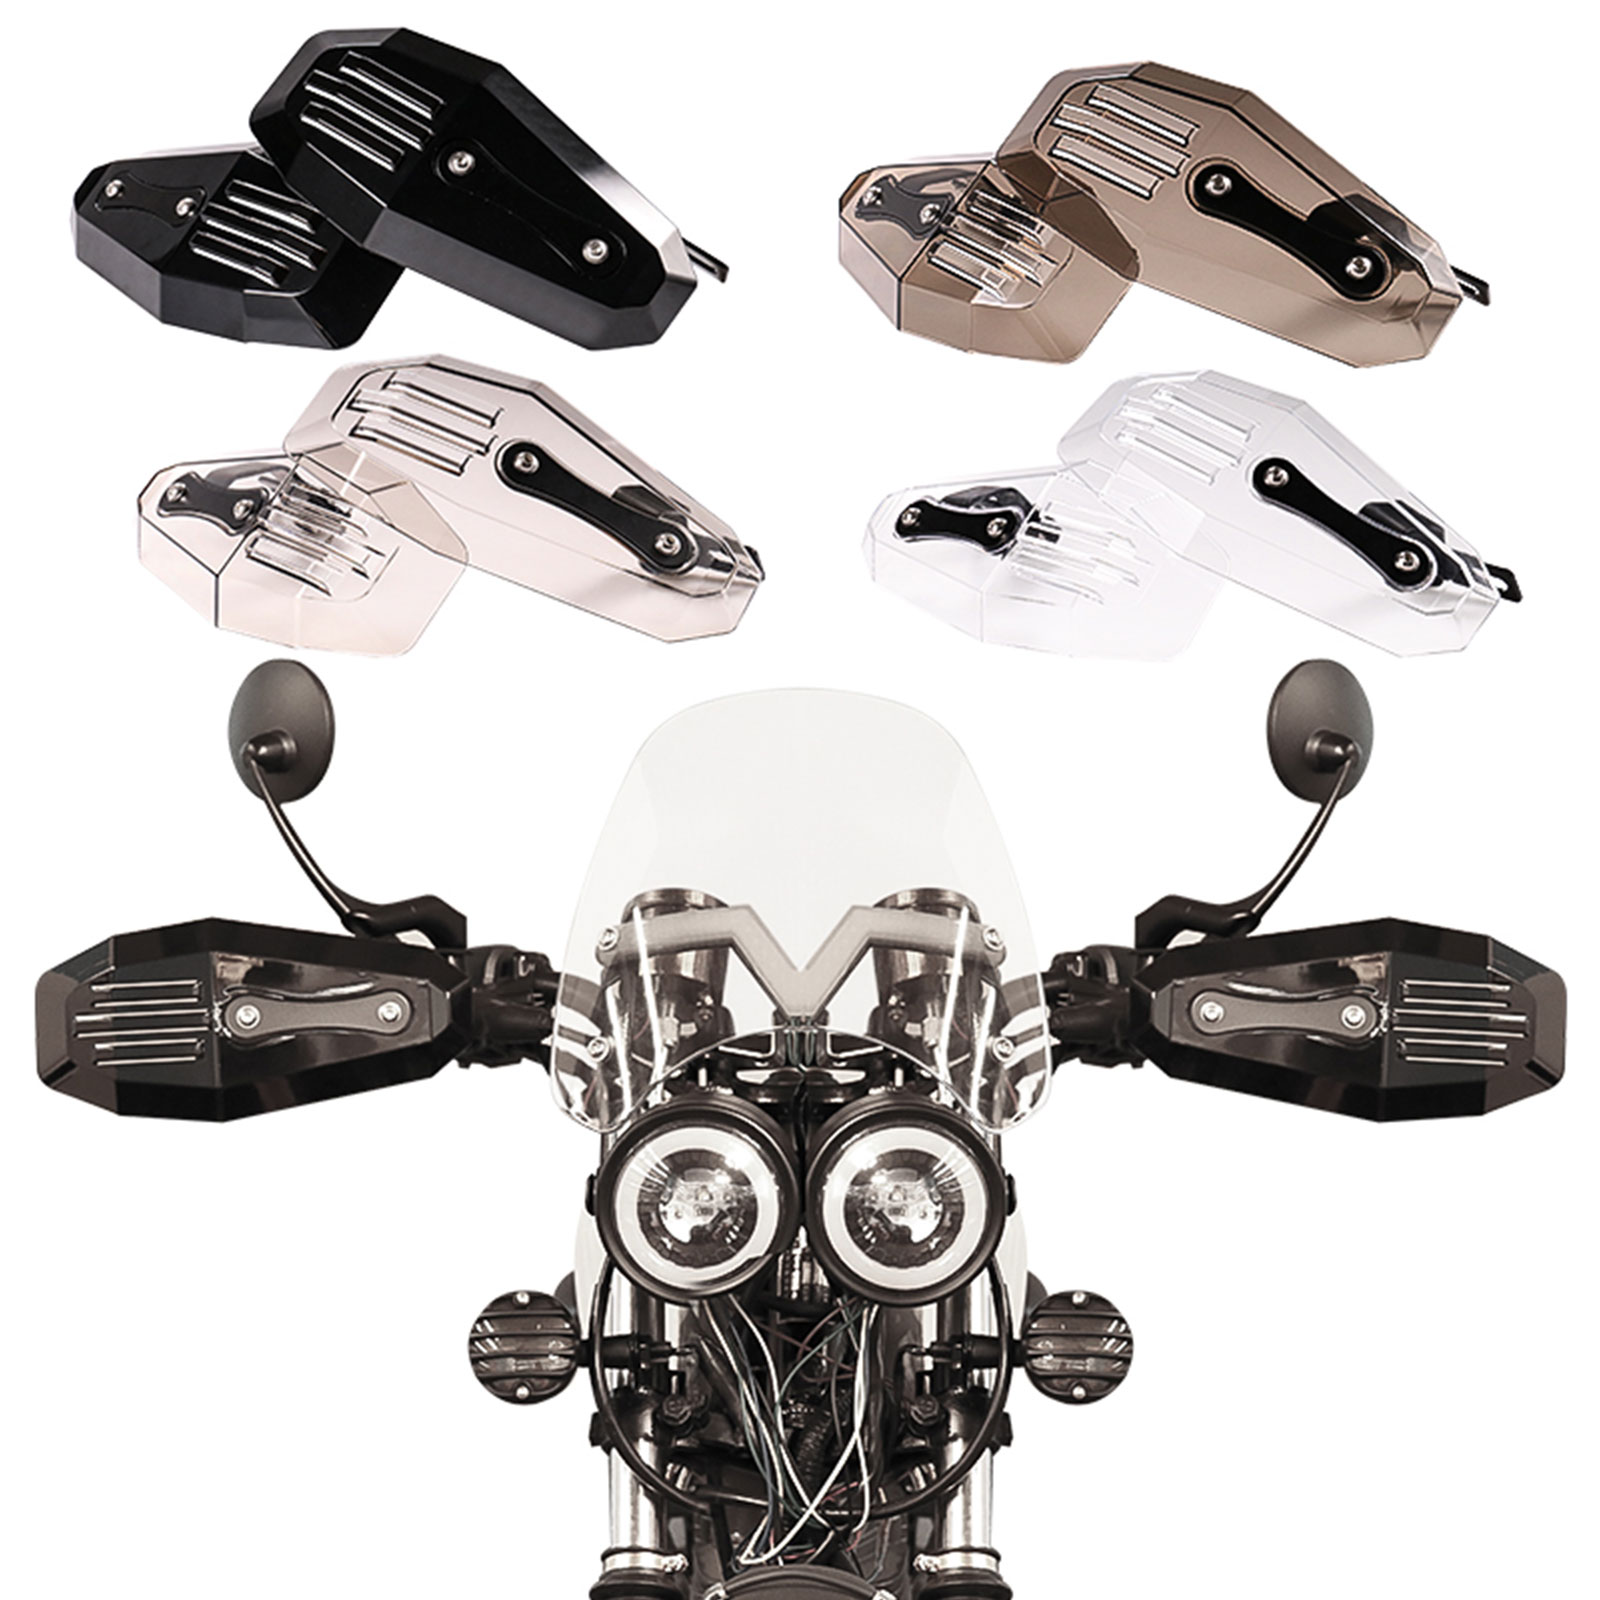 Universal Motorcycle Handguards Grey